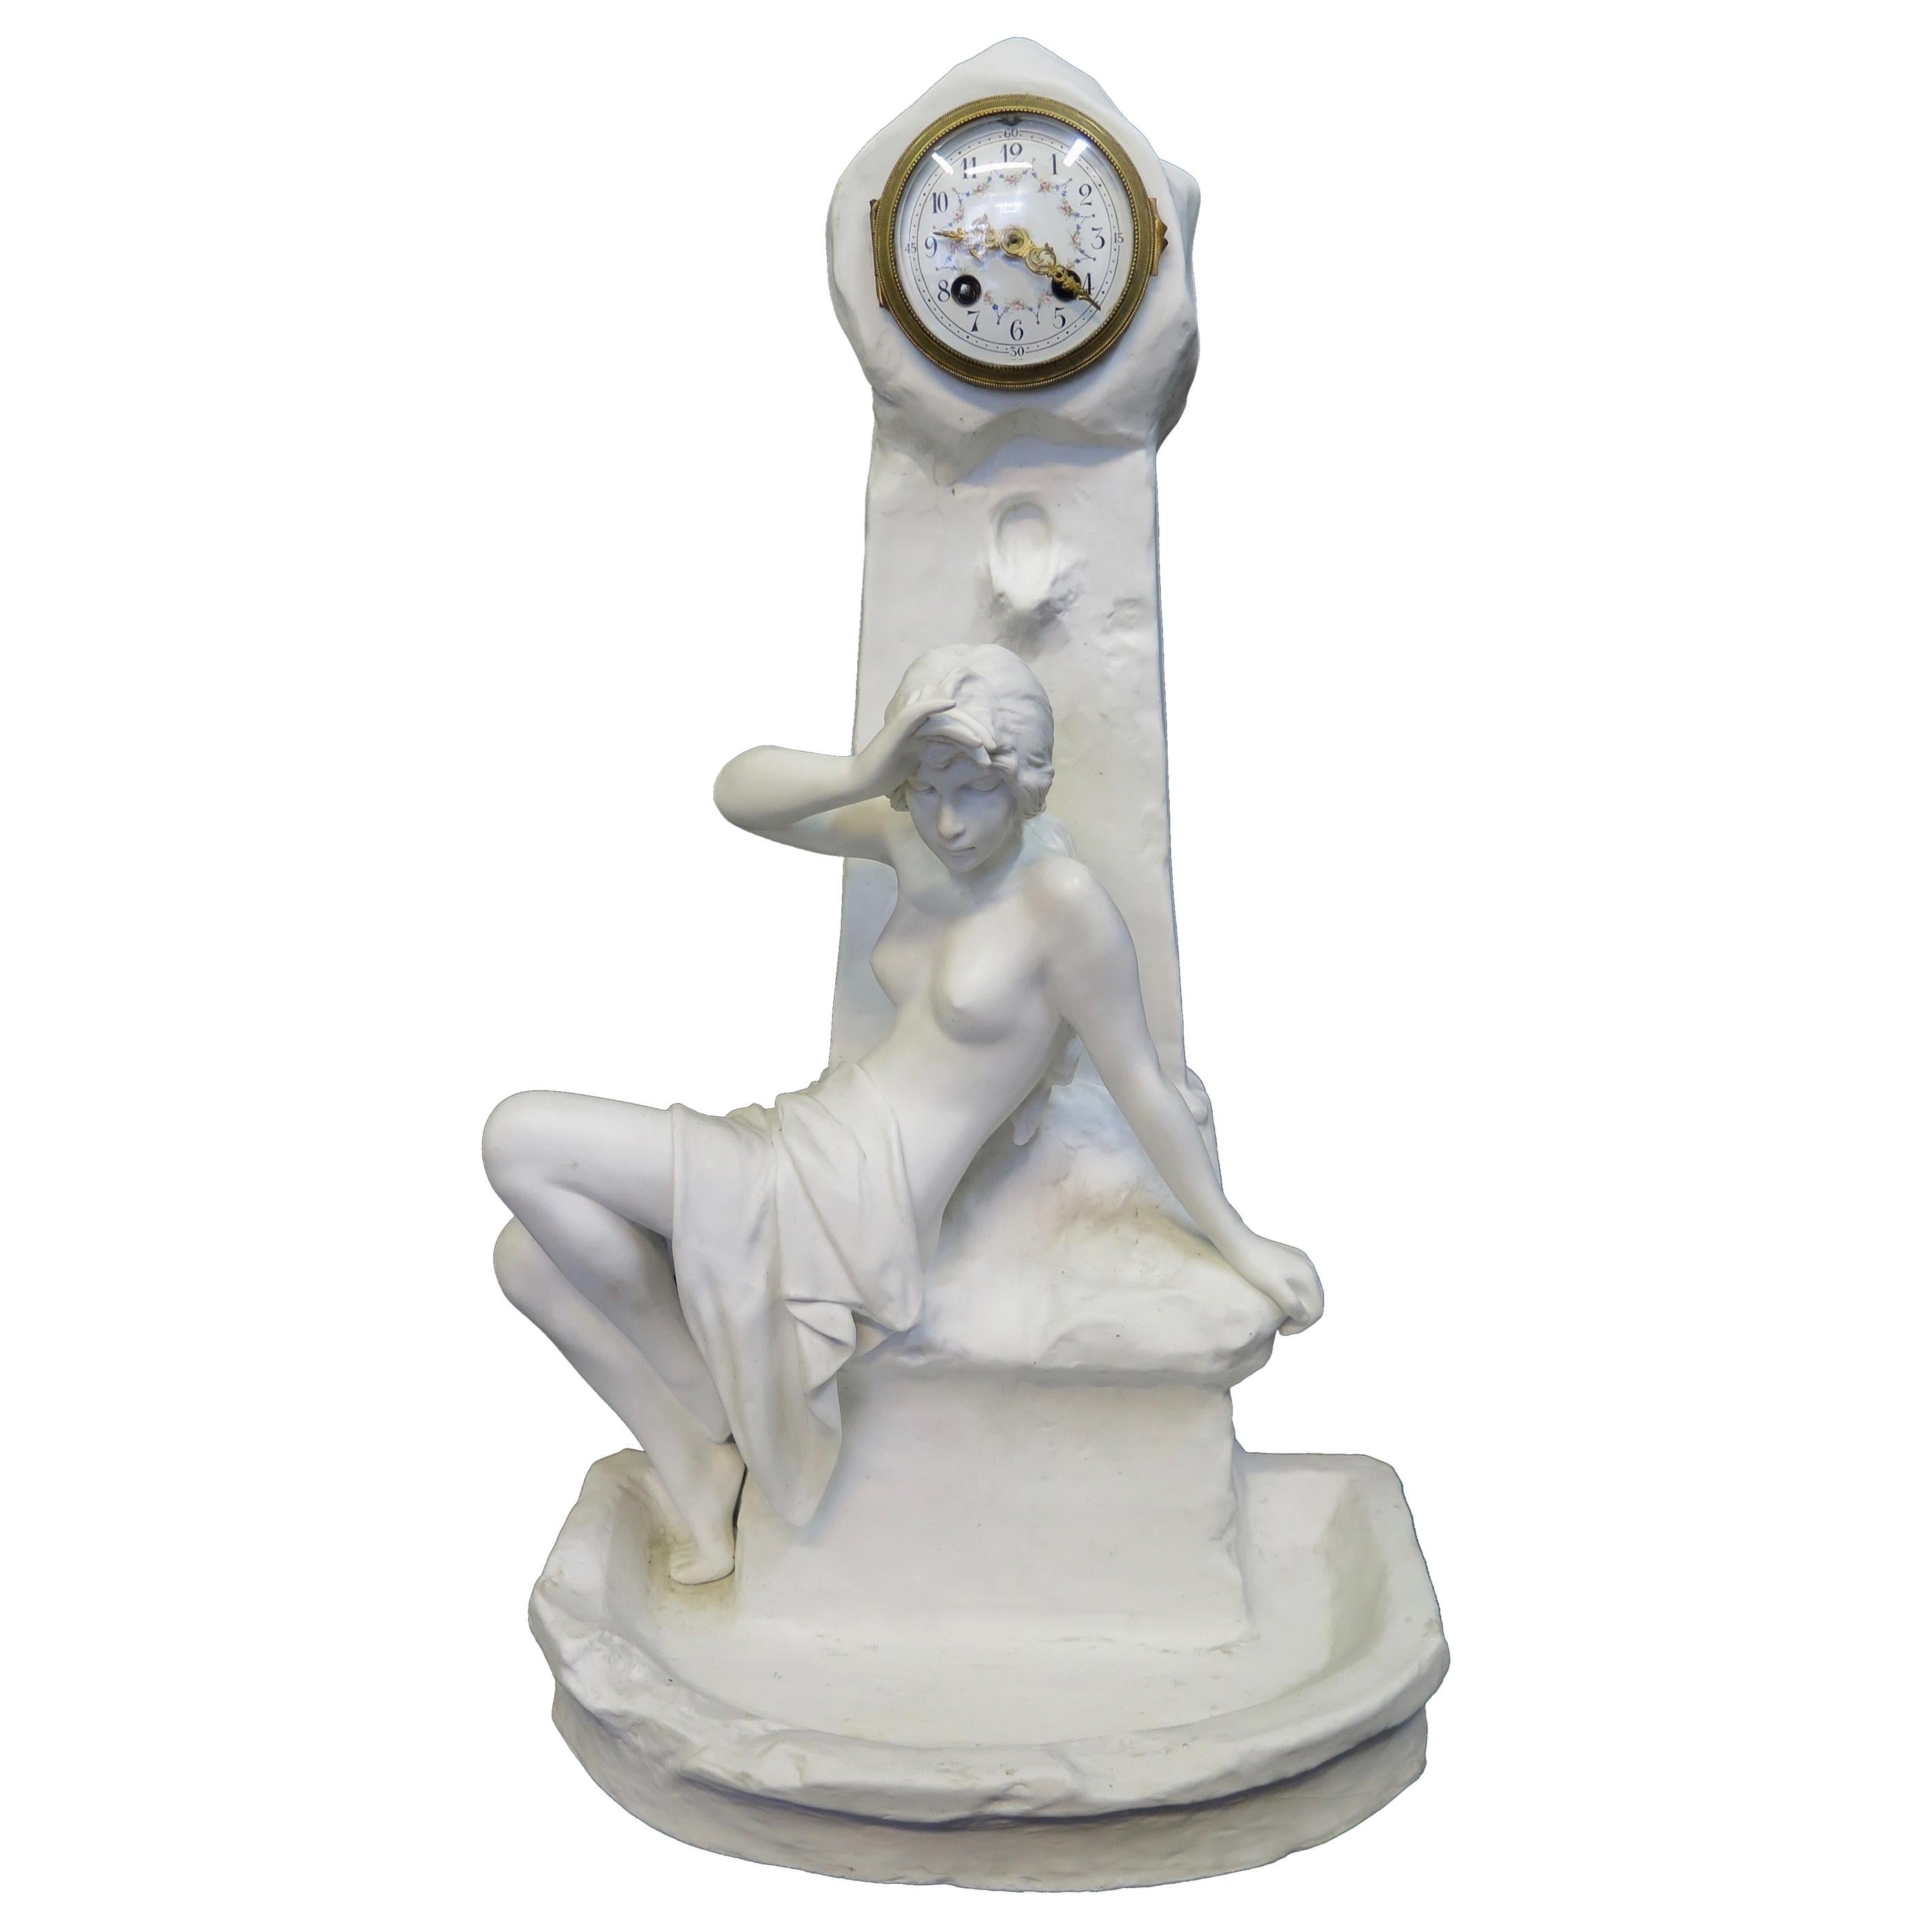 Vintage Art Nouveau Period Emmanuel Villains Porcelain Sculpture with Clock For Sale